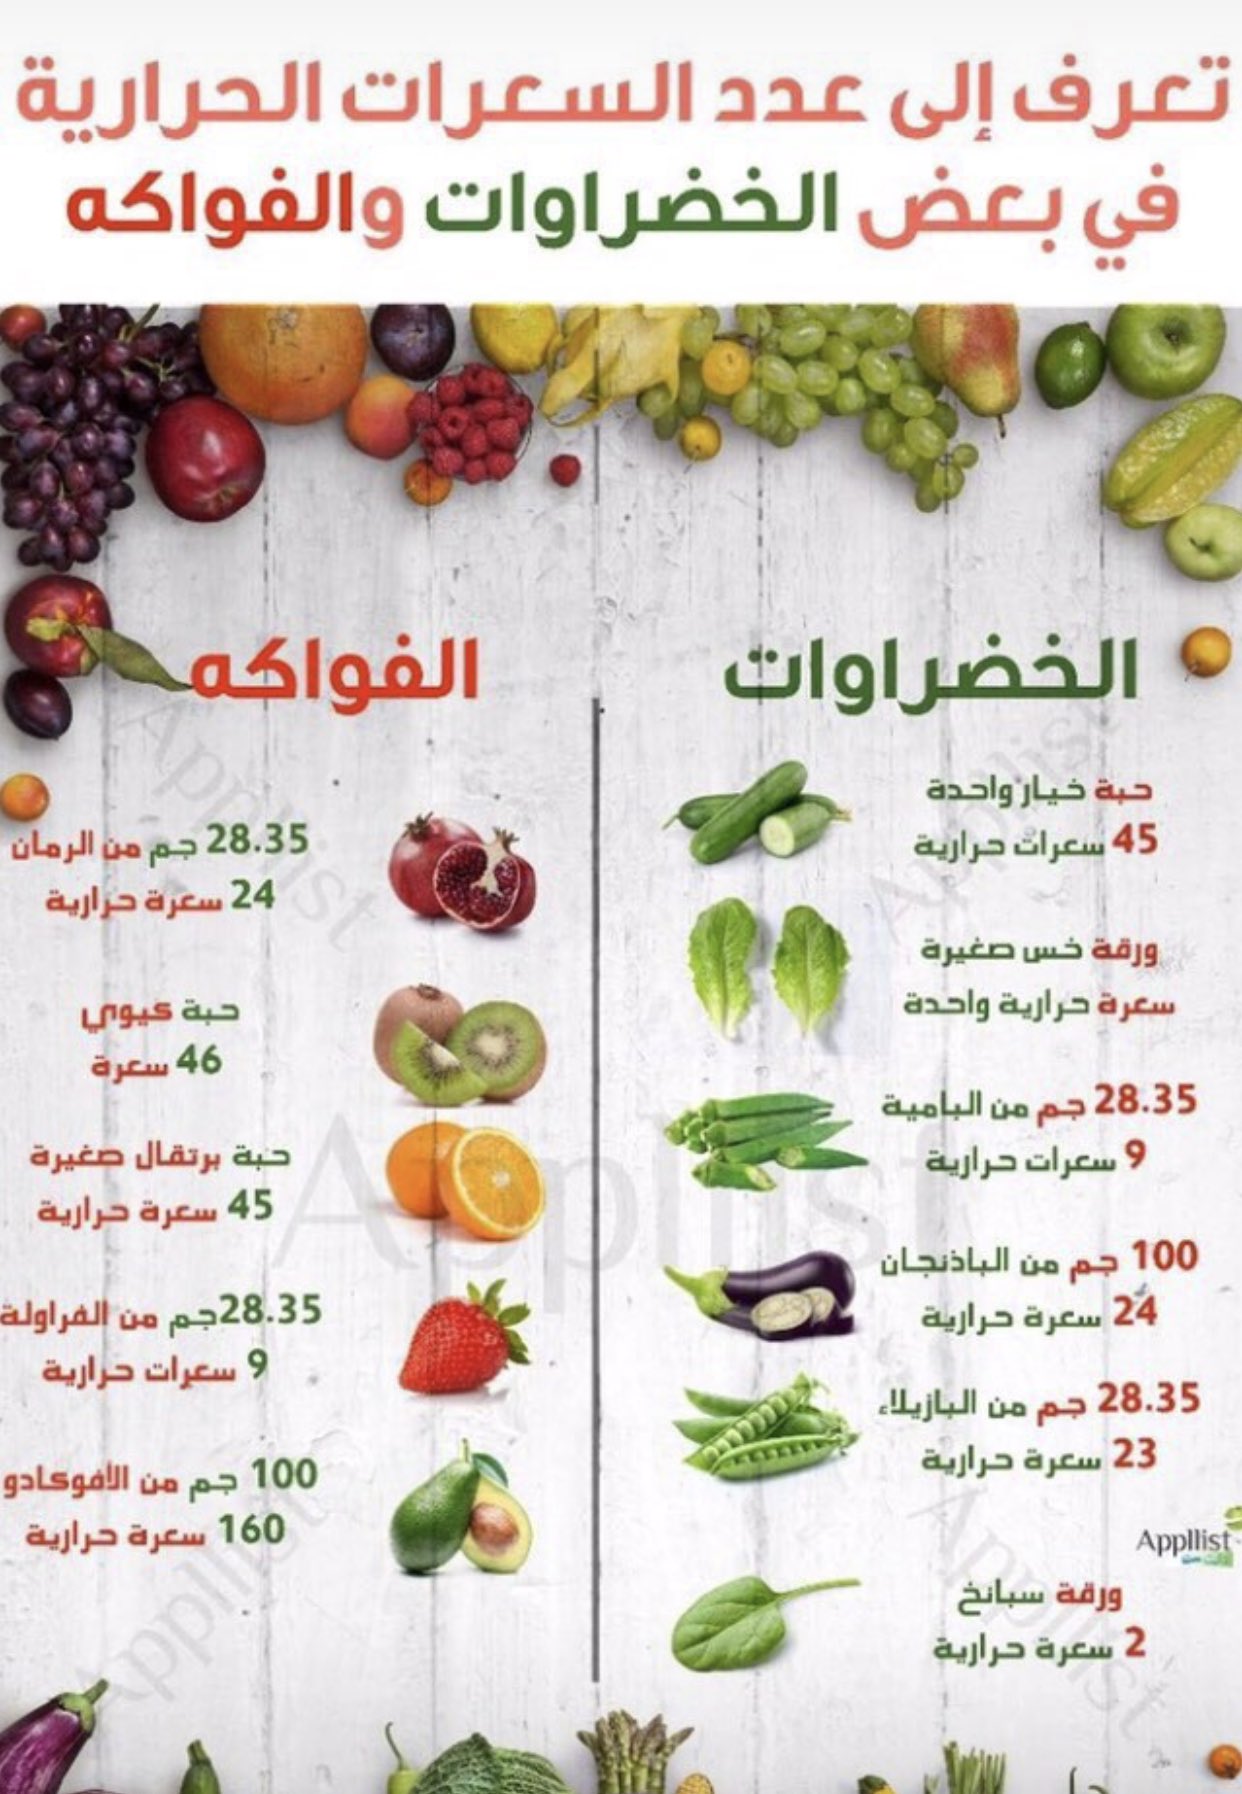 جمانه جلال On Twitter سعرات الحراريه في بعض الخضروات و الفواكه حميتك في راحة يدك